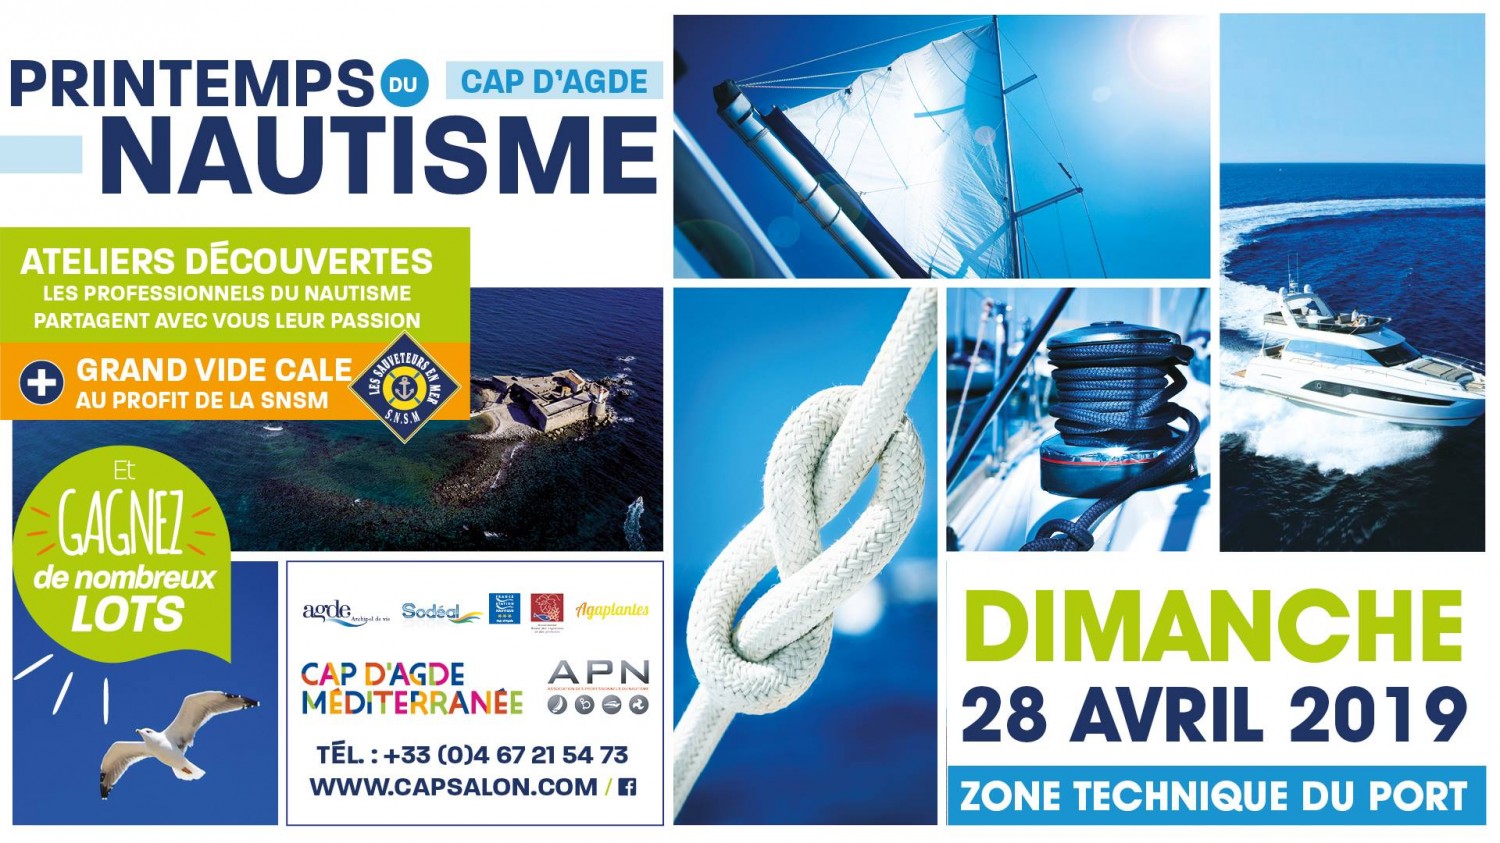 Cap d'Agde - CAP D'AGDE - Printemps du Nautisme  : Dimanche 28 avril 2019 : Demandez le programme ! 